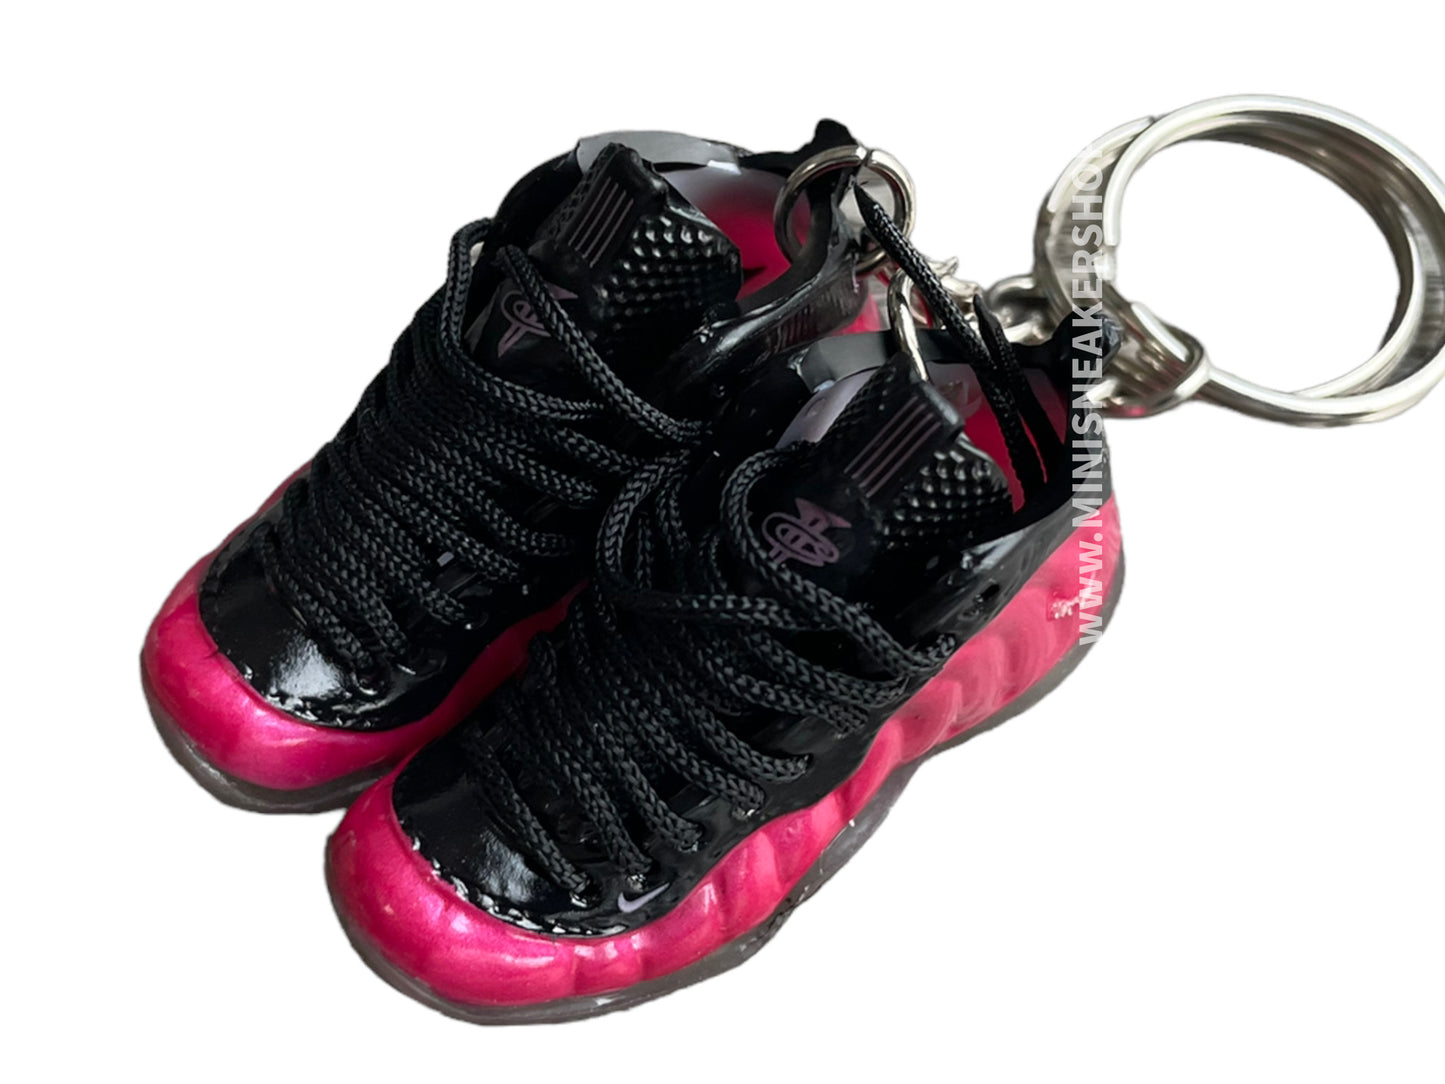 Mini sneaker keychain 3D Foamposite - Fushia Pink